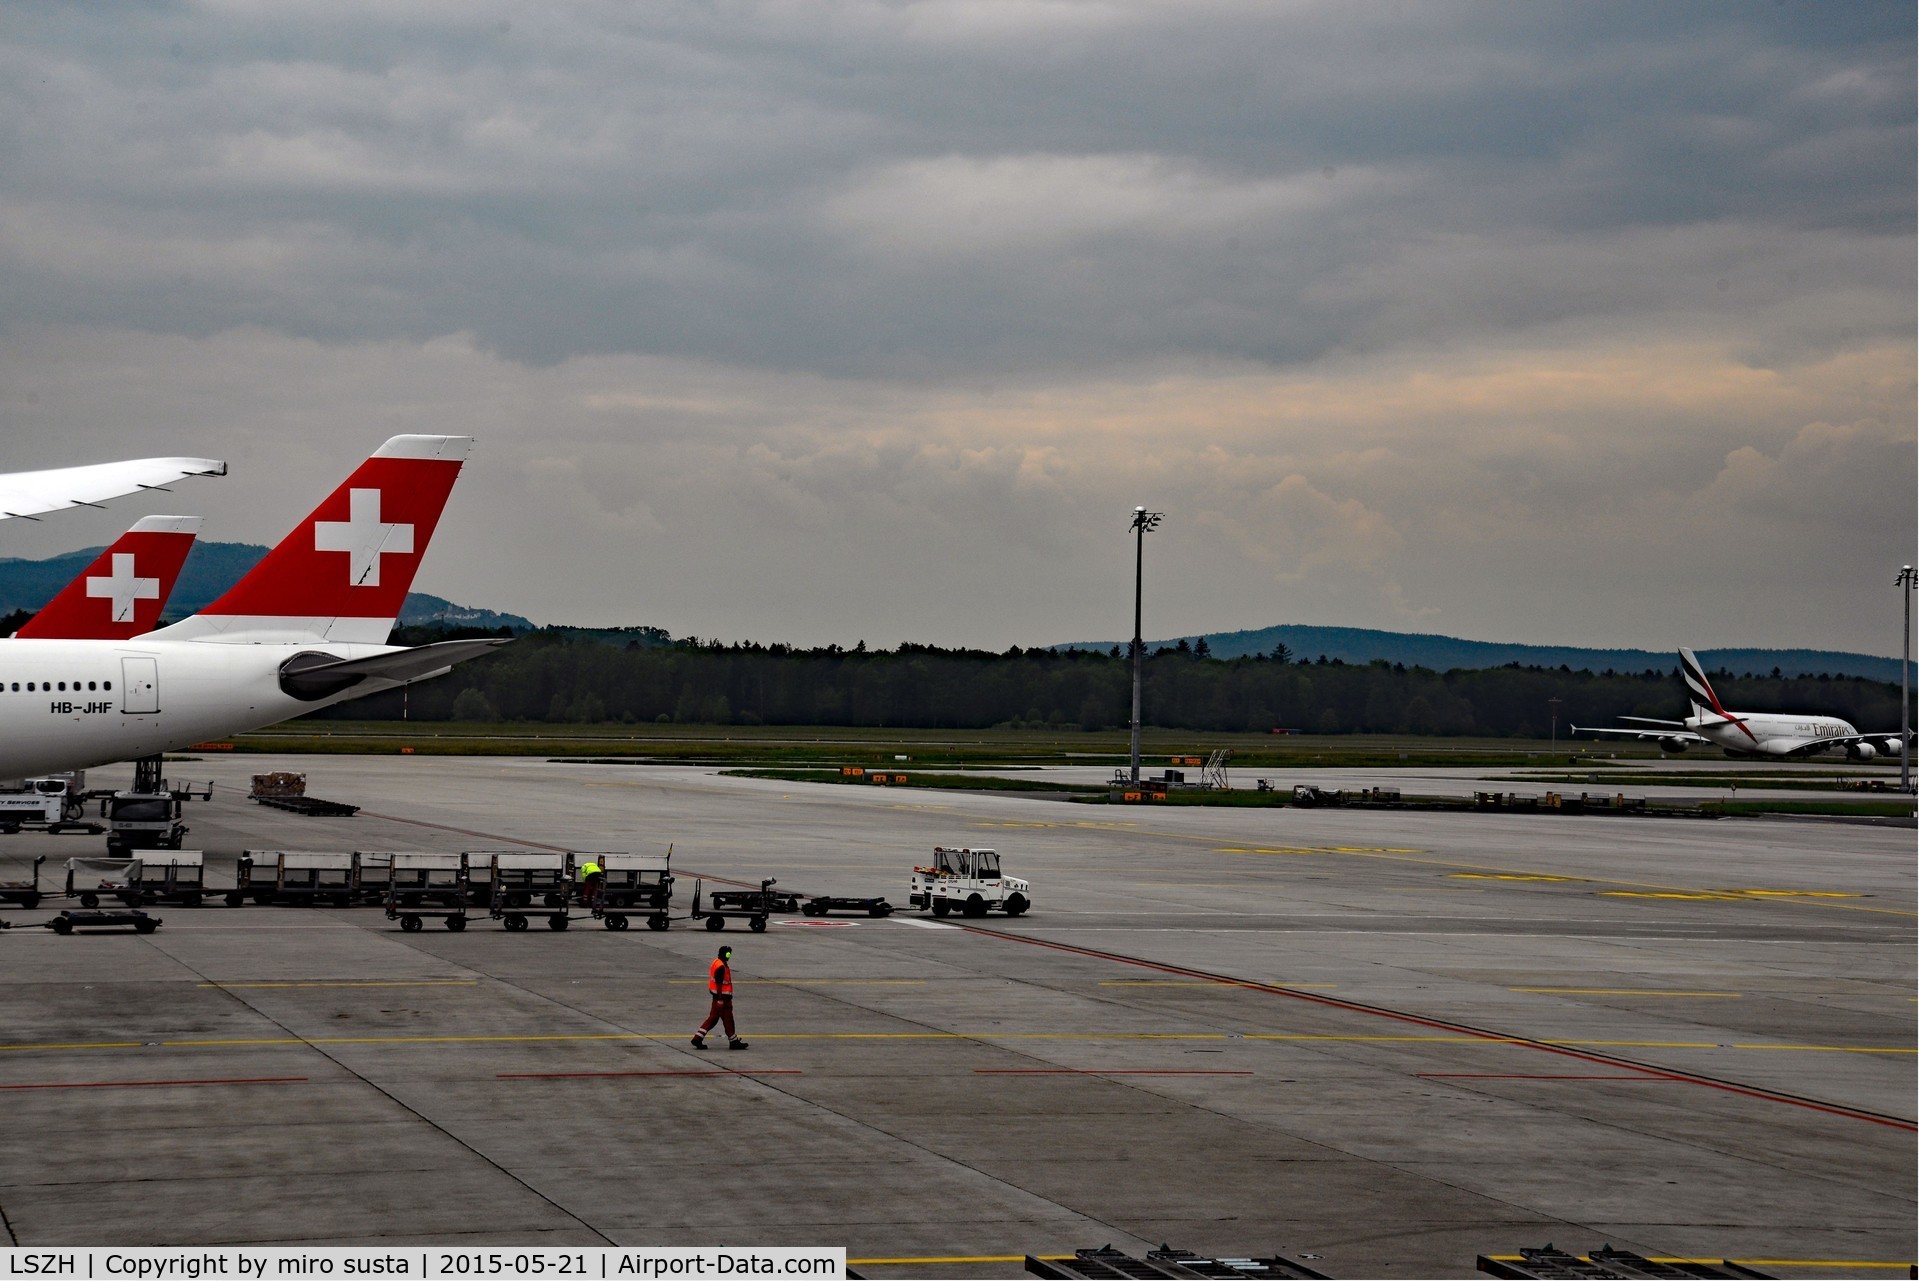 Zurich International Airport, Zurich Switzerland (LSZH) - Zurich Kloten International Airport, Switzerland